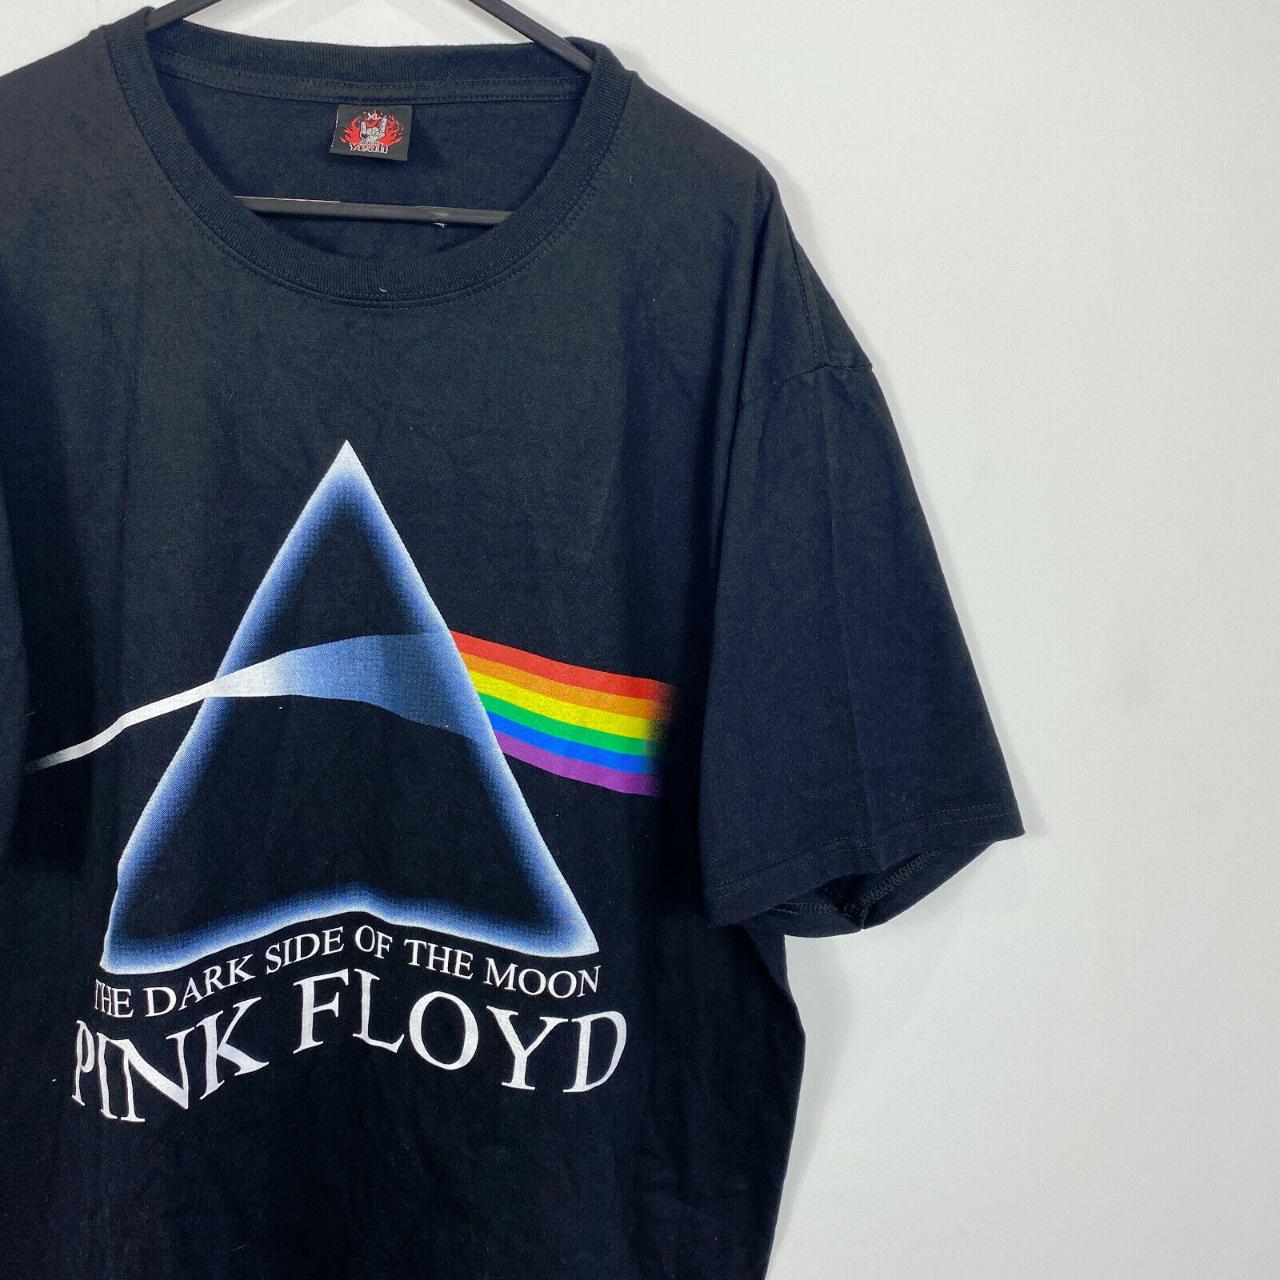 Pink Floyd Dark Side of the Moon Vintage T-Shirt... - Depop